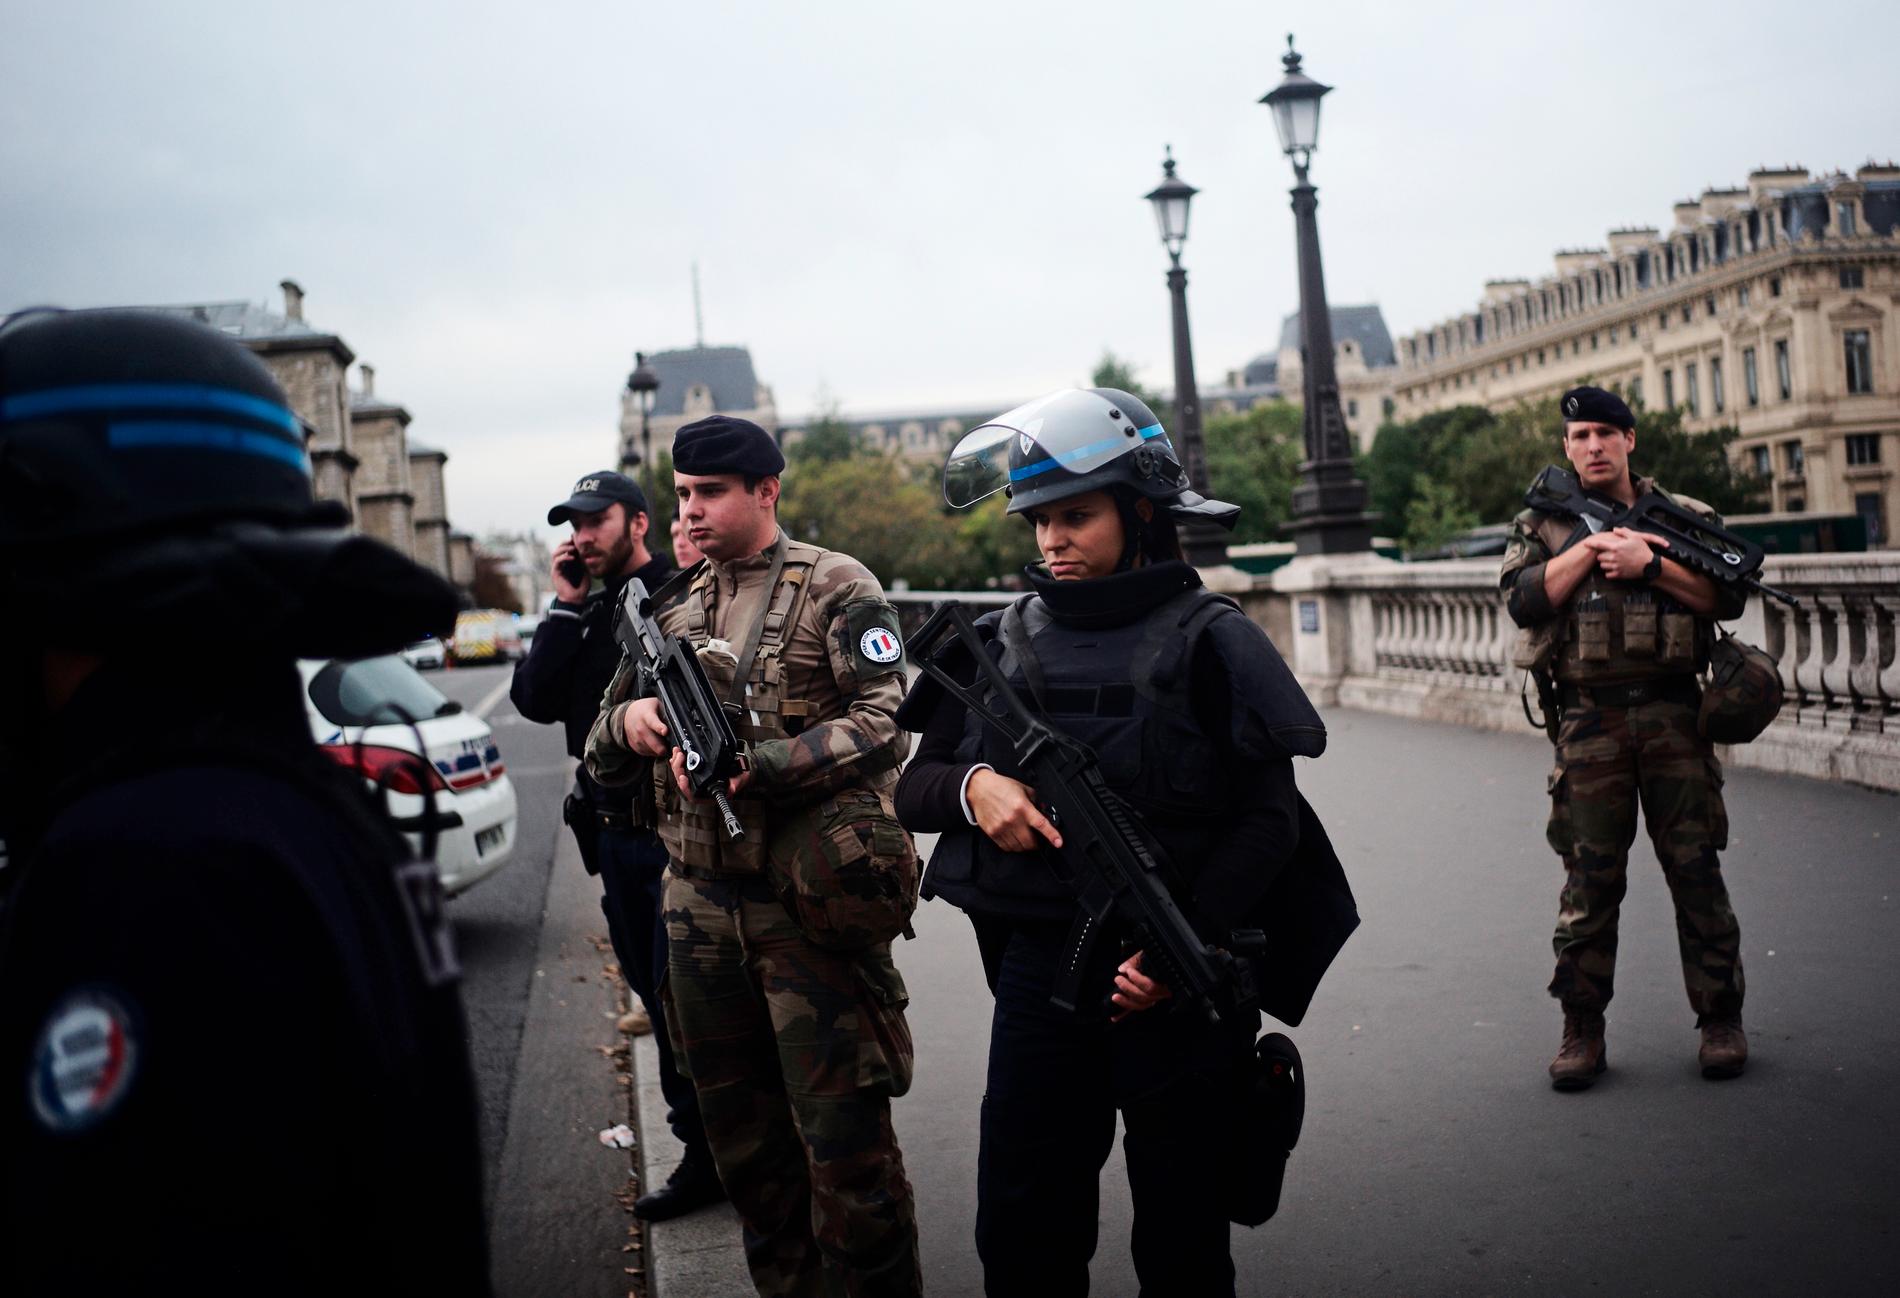 En knivman gick till attack inne i en polisstation i centrala Paris. Minst fyra poliser ska ha dödats i attacken, rapporterar franska medier.